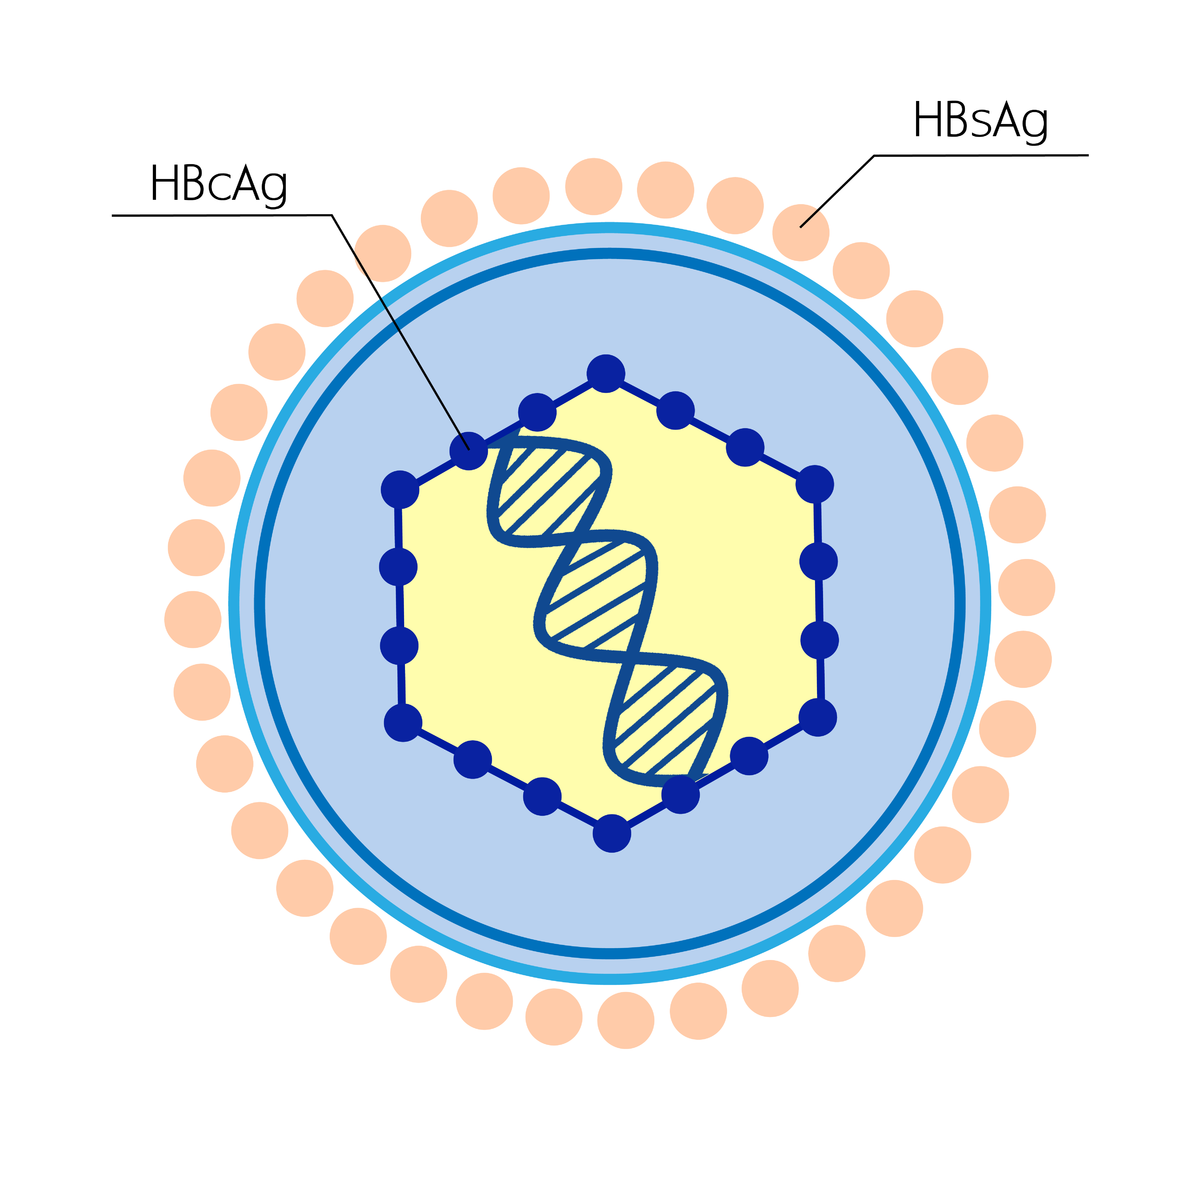 Гепатит b hbsag. HBS антиген гепатита b. Вирус гепатита б HBSAG. Антигенная структура вируса гепатита в (HBV). HBS антиген вируса гепатита в.